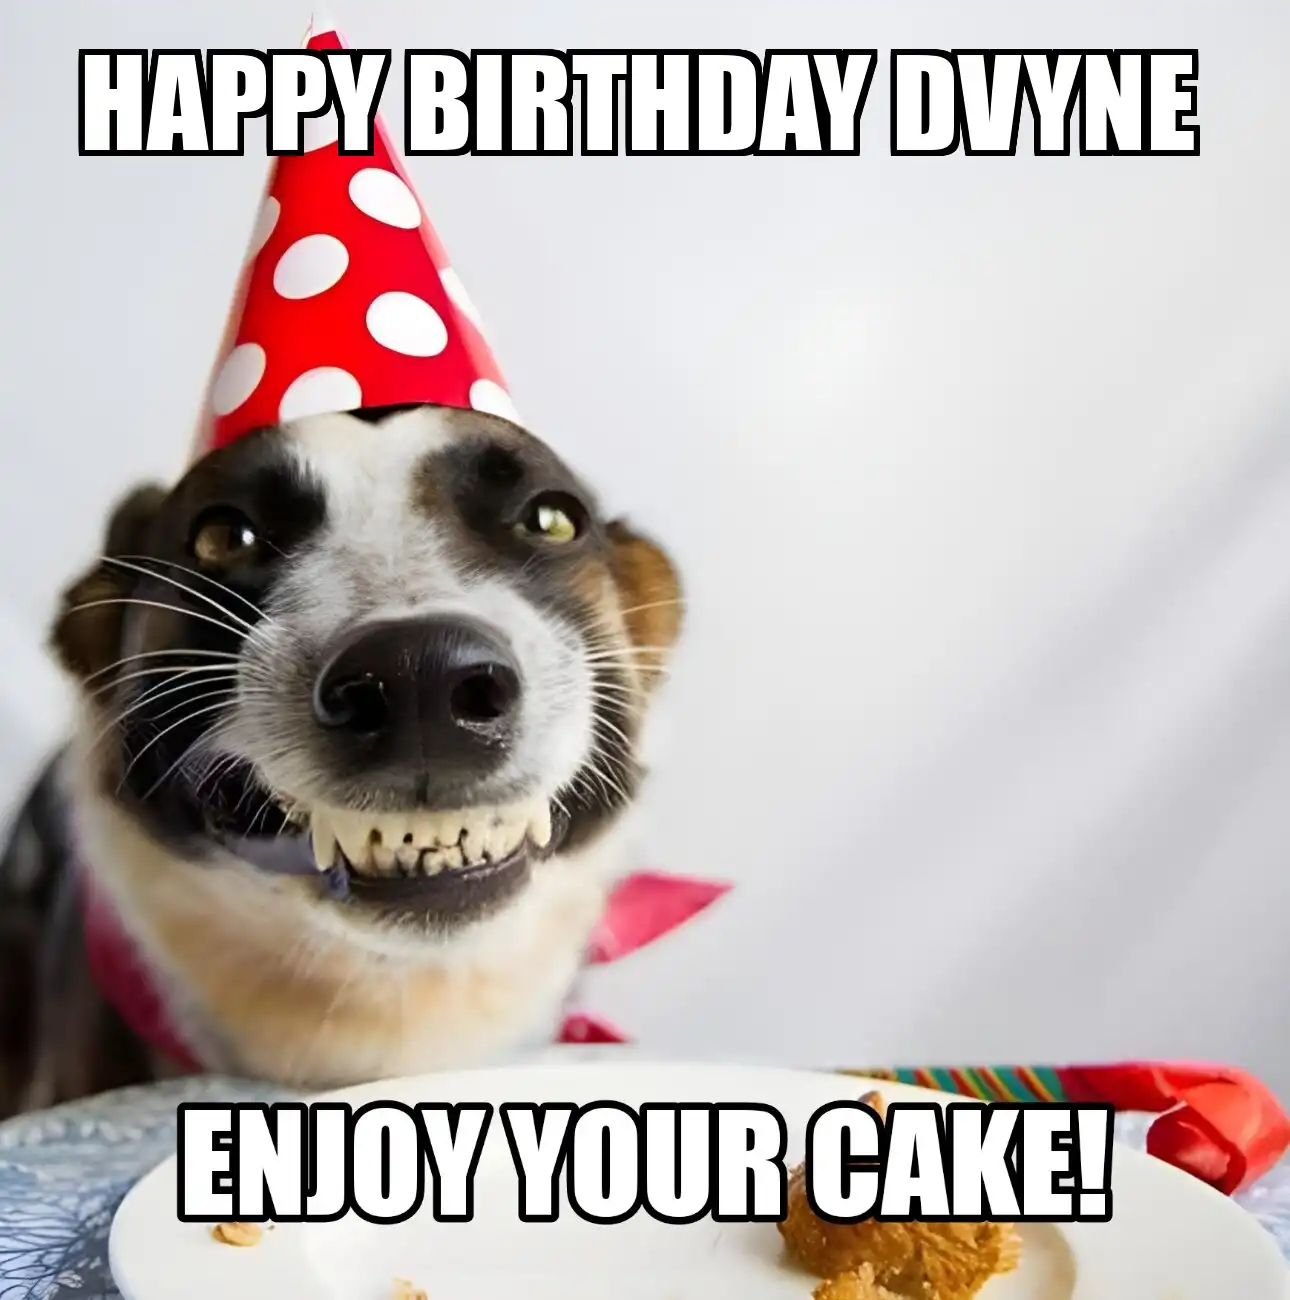 Happy Birthday Dvyne Enjoy Your Cake Dog Meme